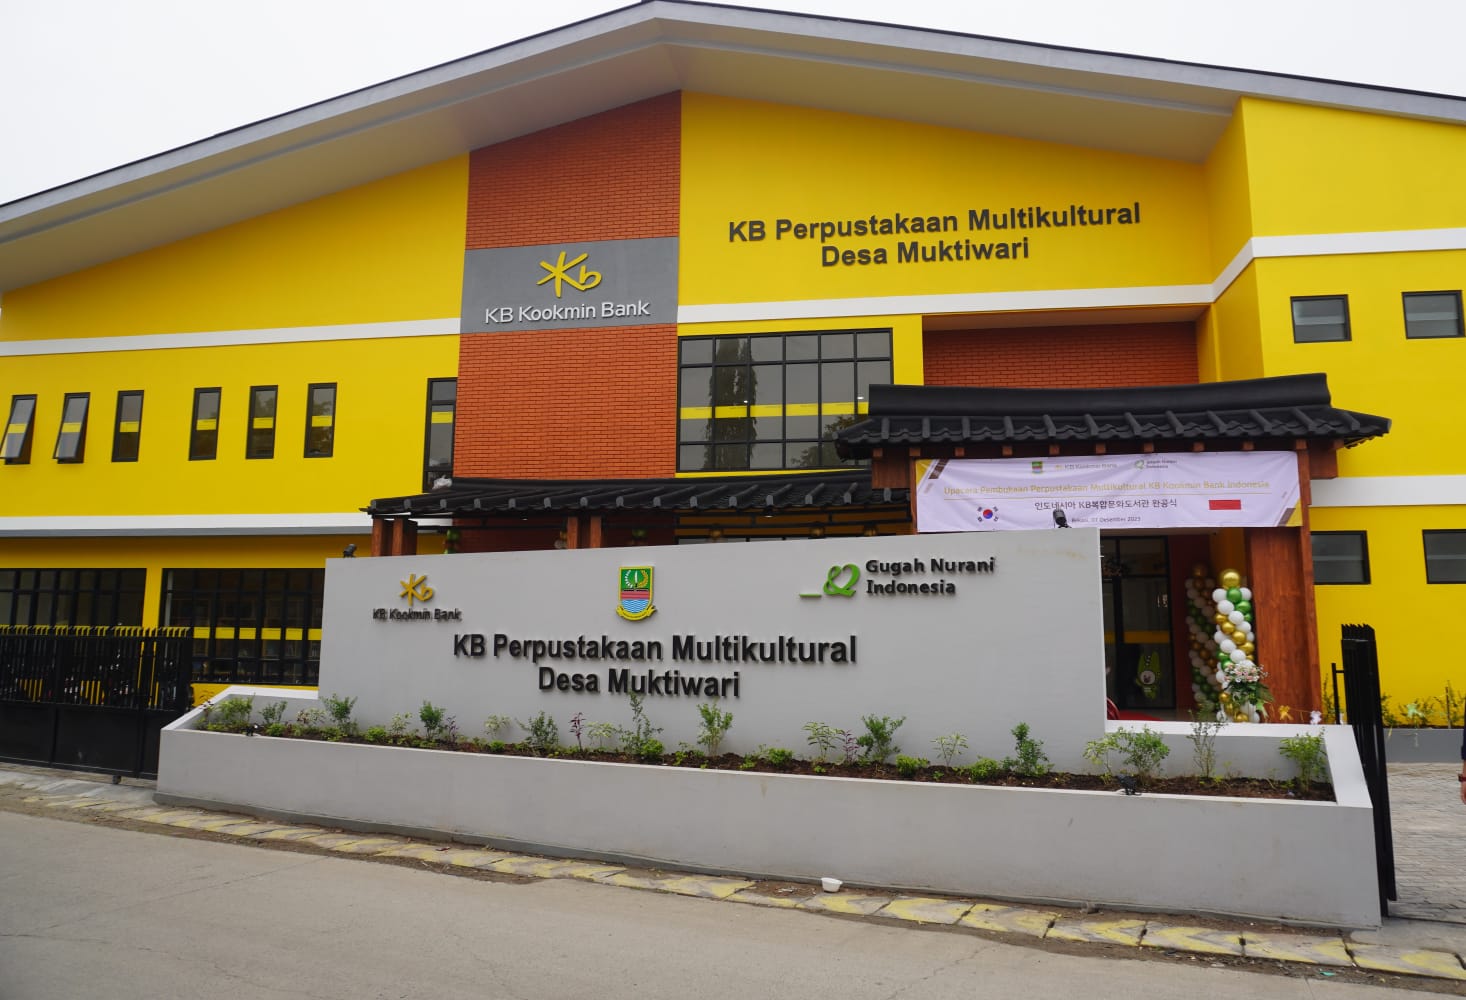 Peduli Pendidikan, Bank KB Bukopin Dukung Pembangunan Perpustakaan Multikultural di Bekasi